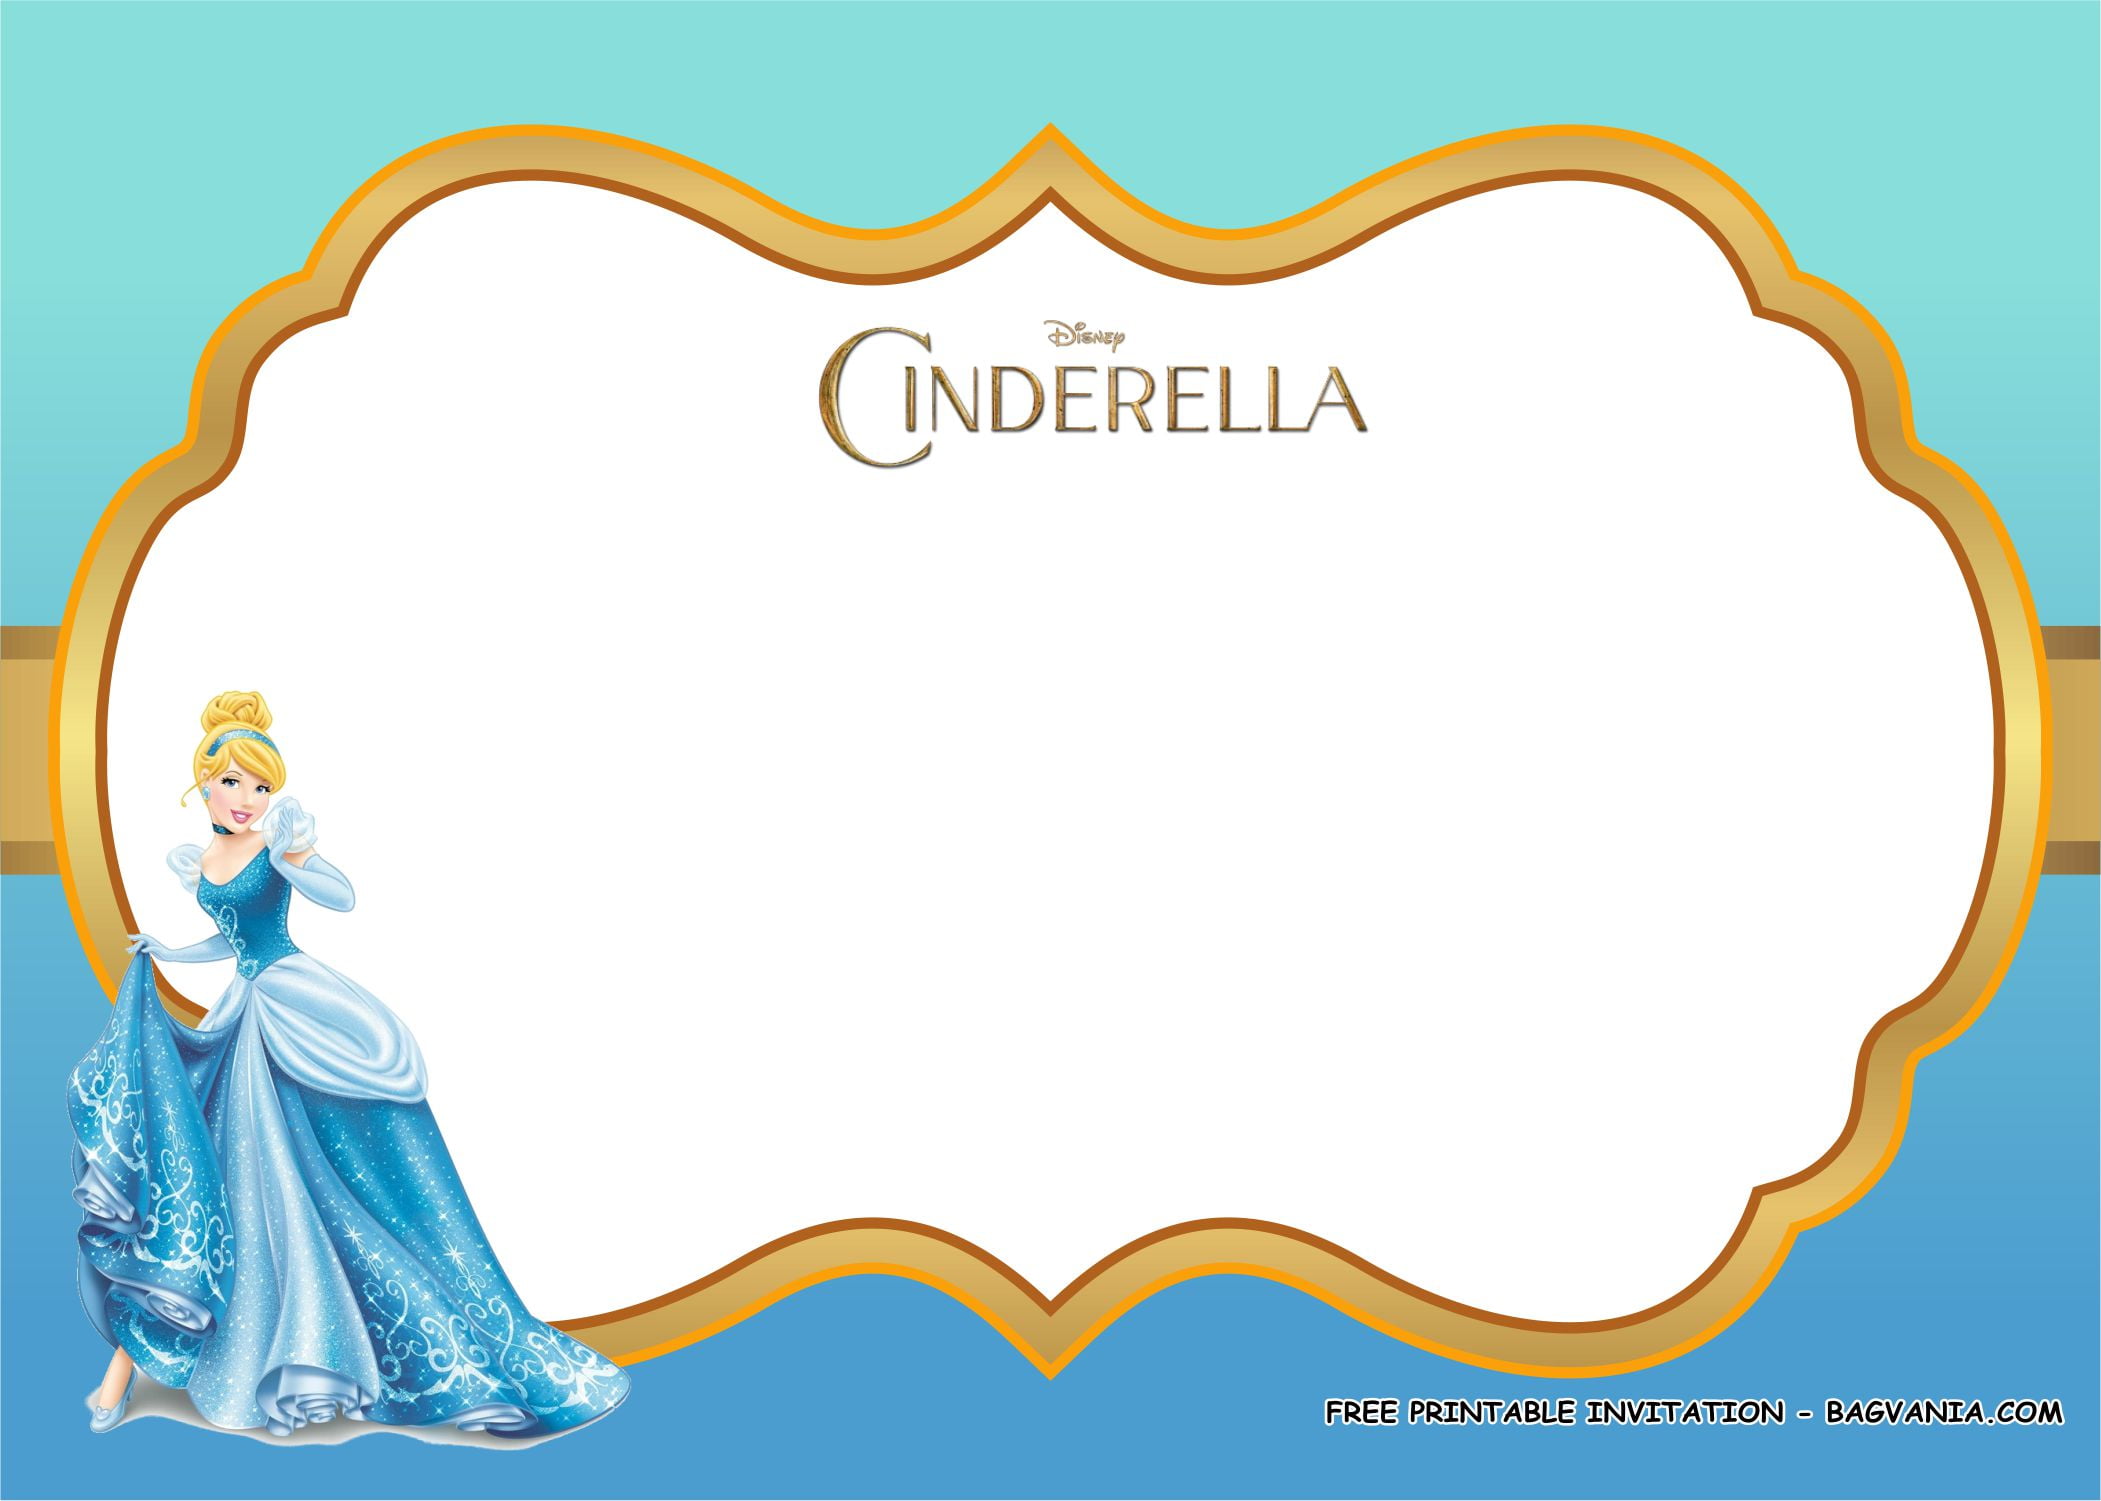 cinderella-invitation-template-free